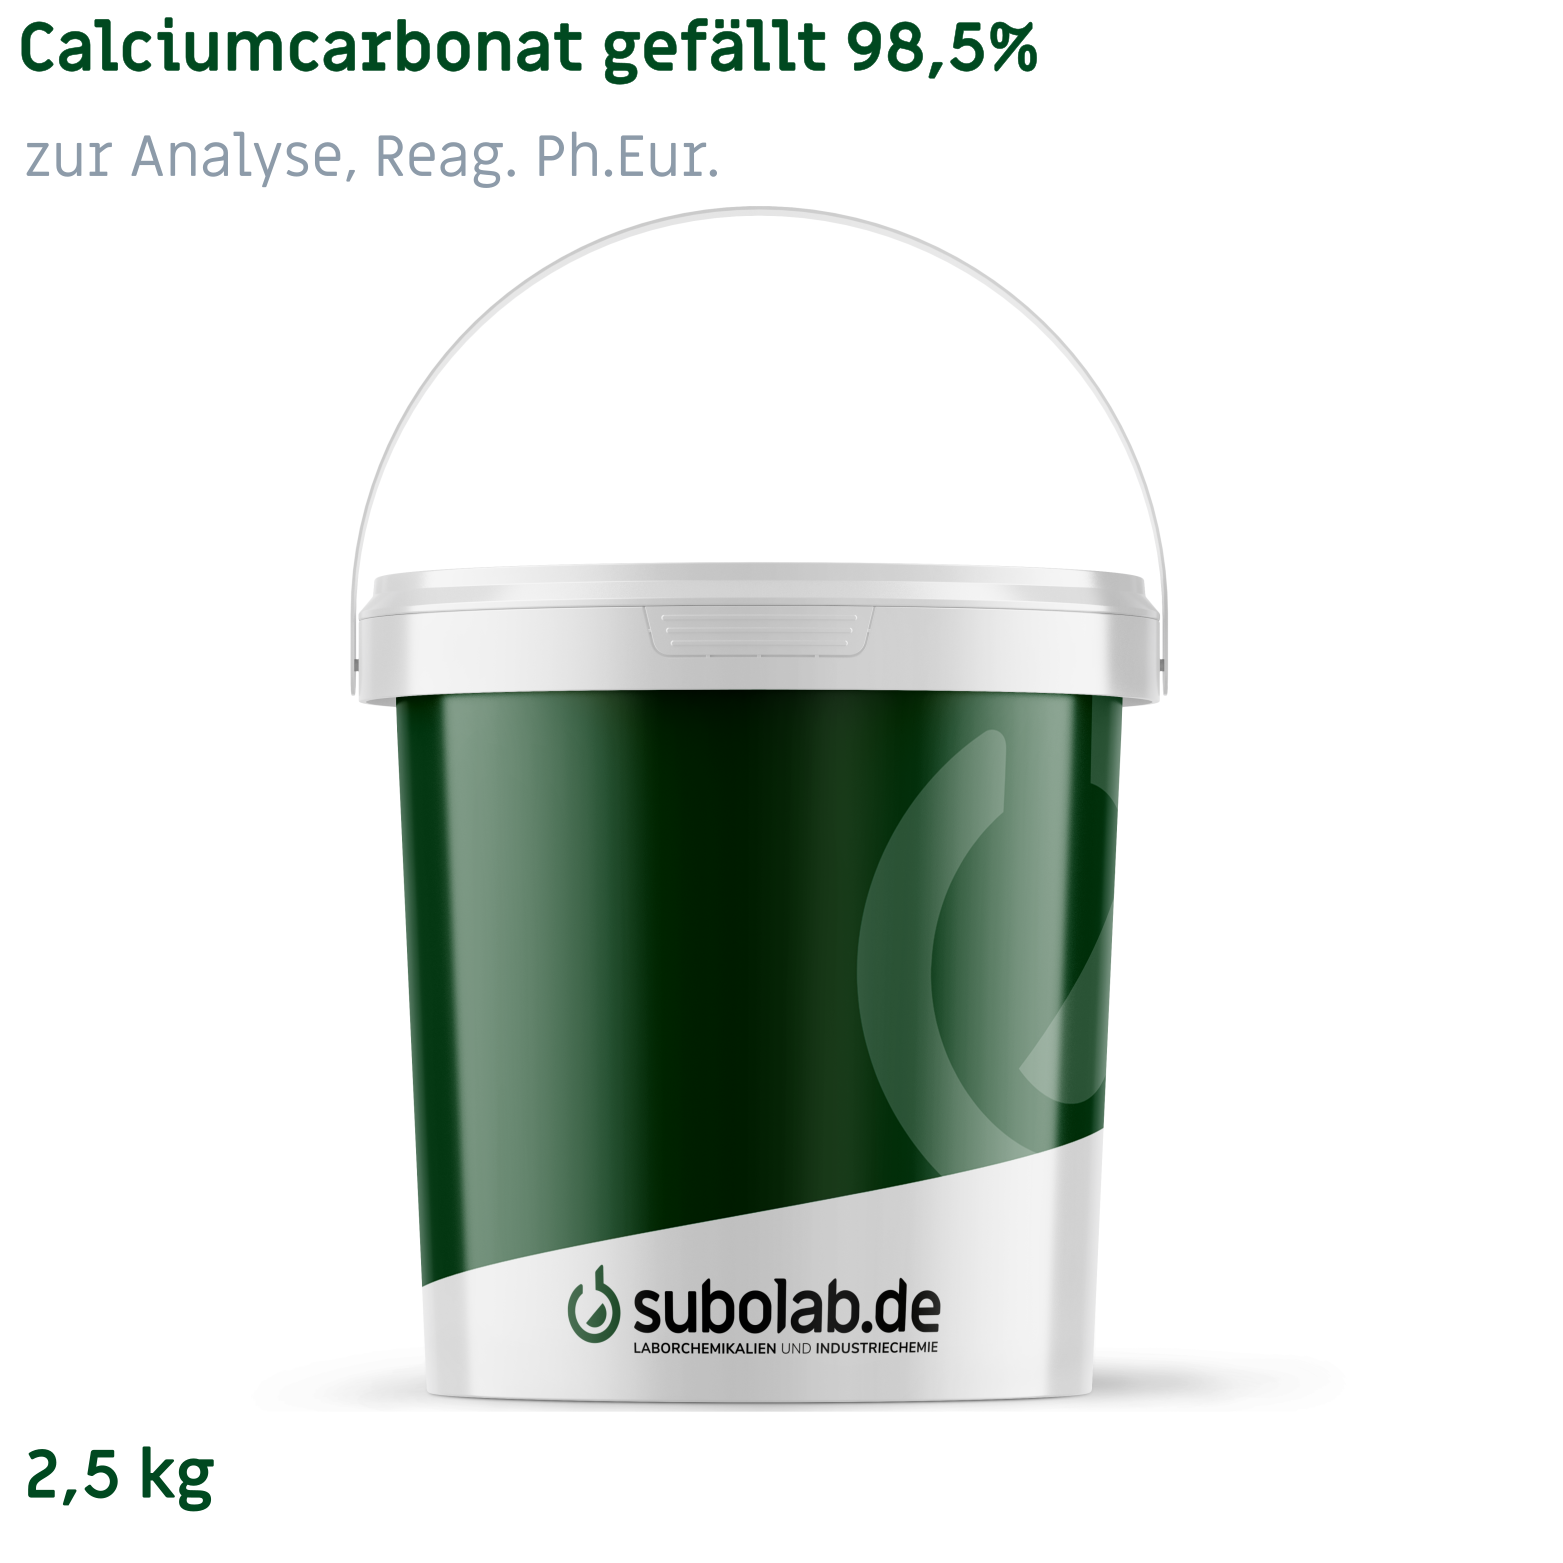 Bild von Calciumcarbonat gefällt 98,5% zur Analyse, Reag. Ph.Eur. (2,5 kg)